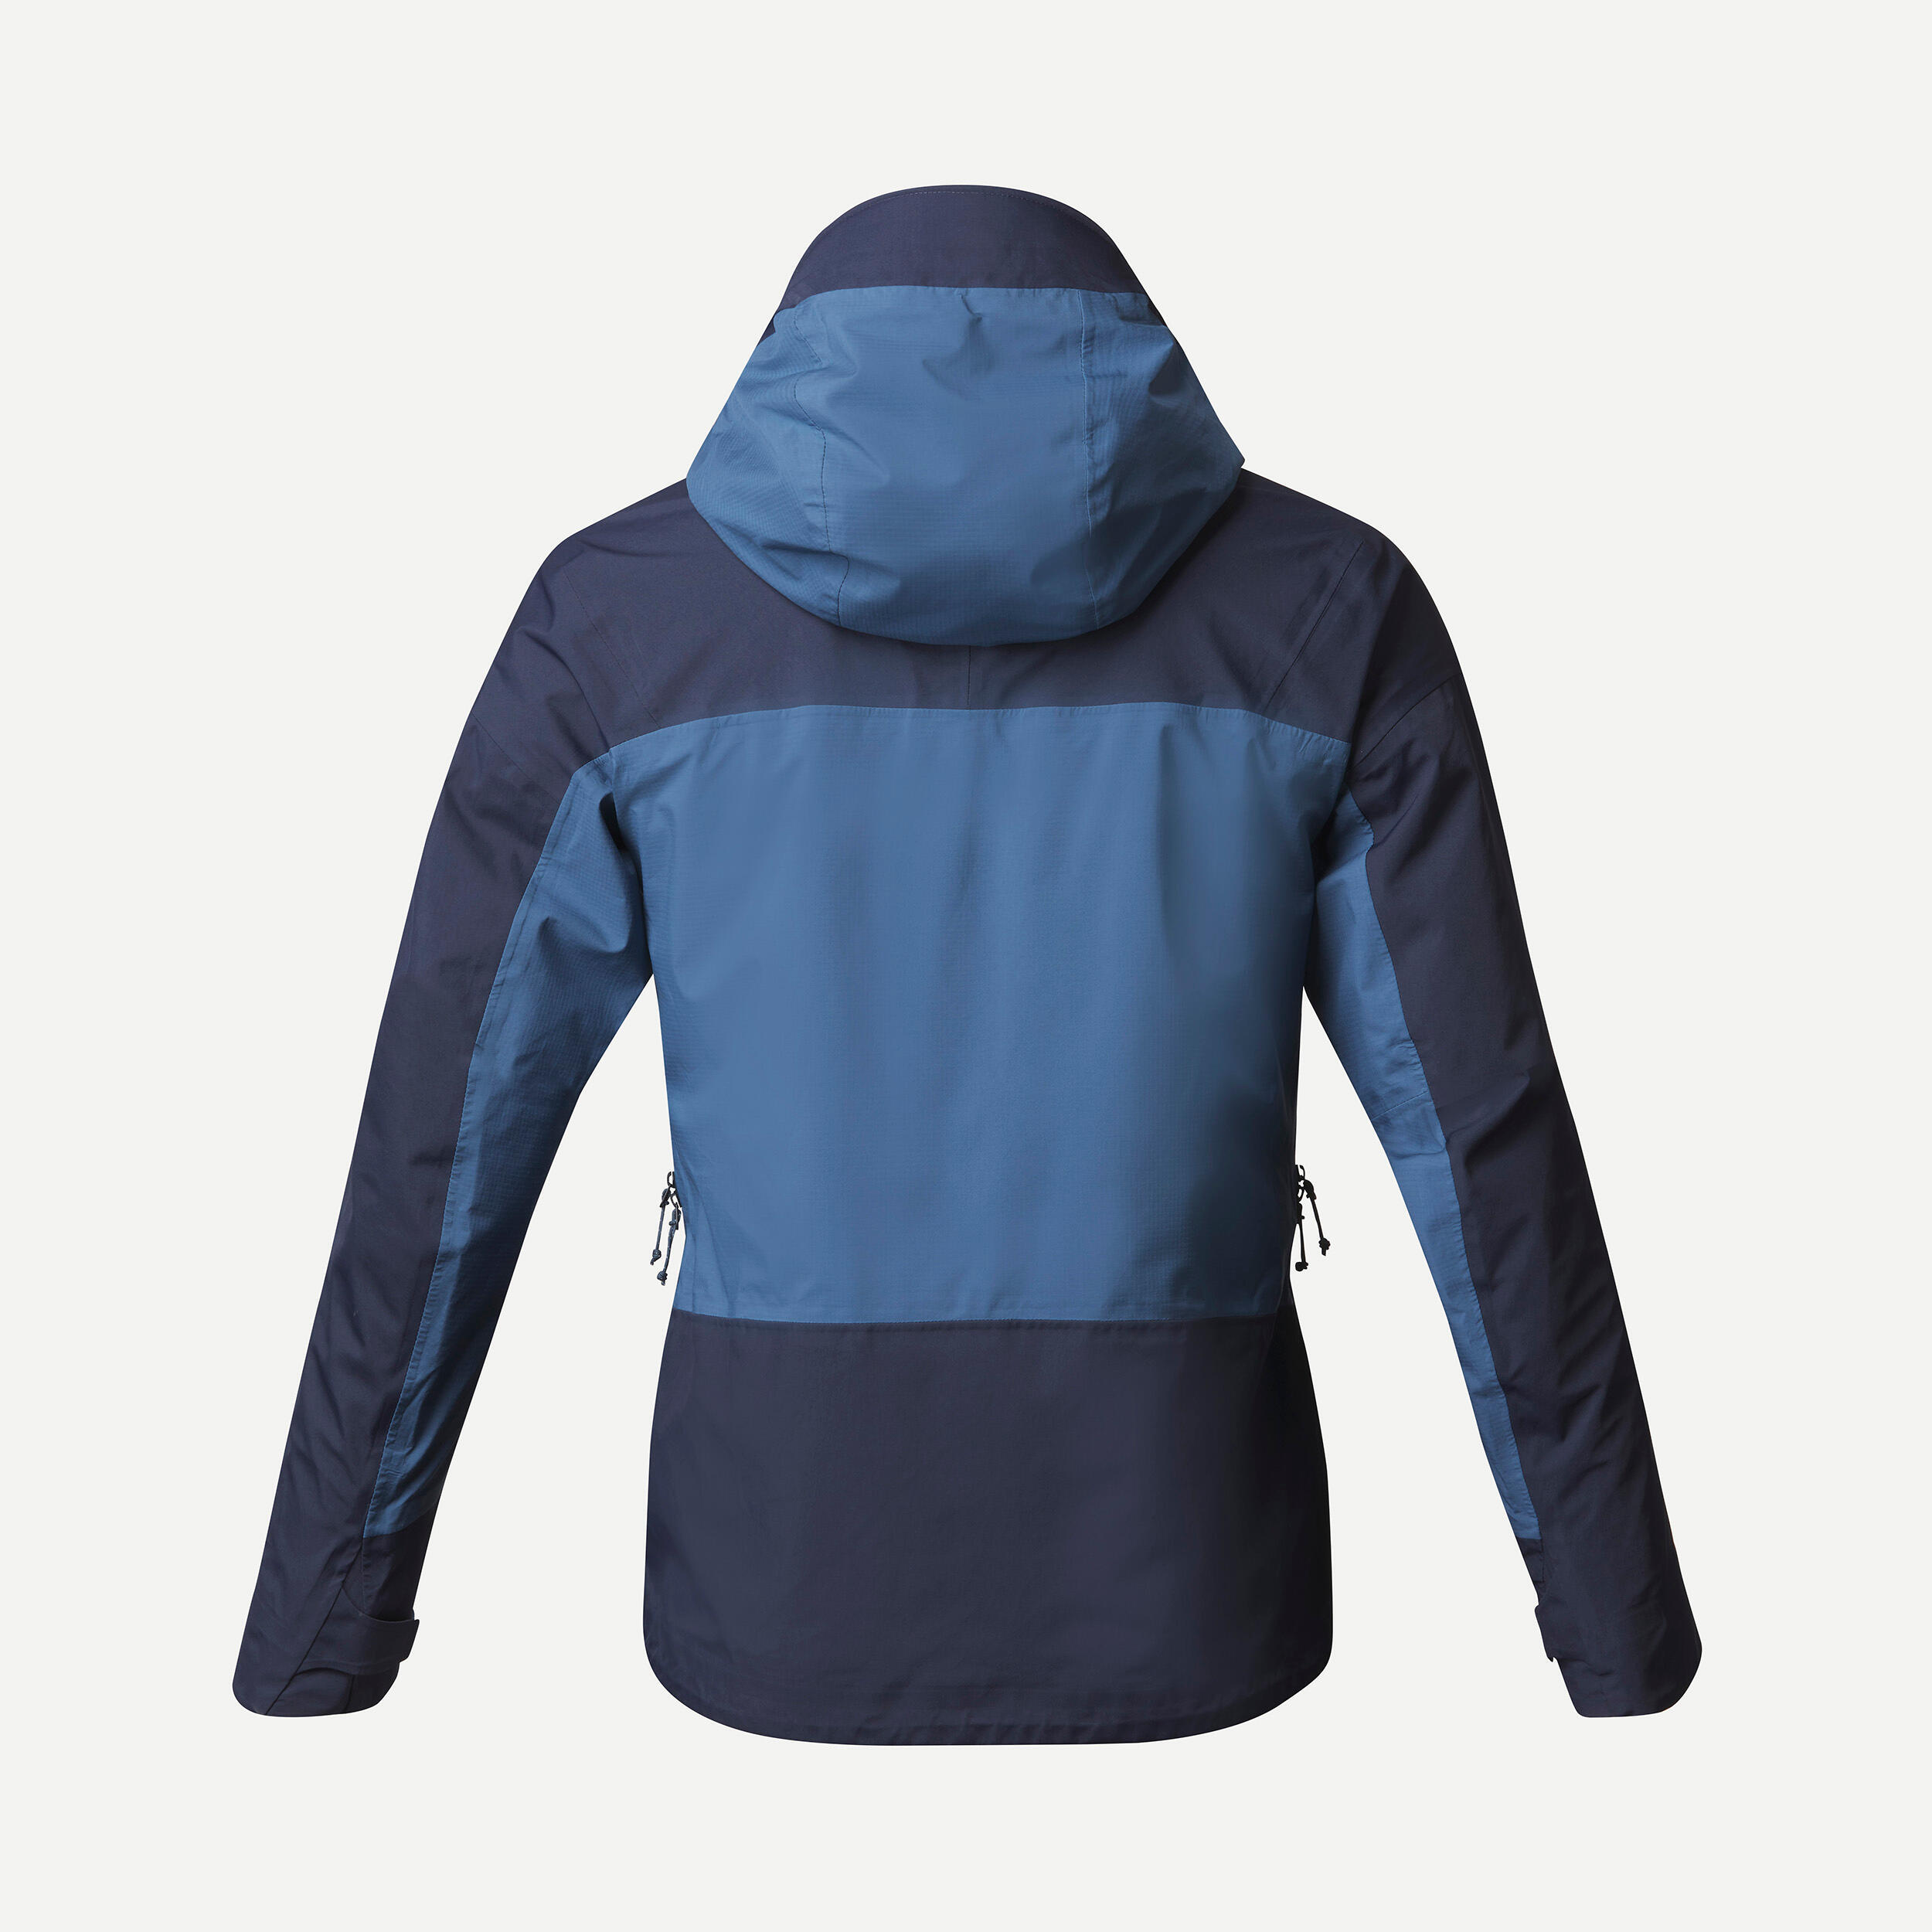 Men’s Waterproof Jacket – 20,000 mm – taped seams - MT500  4/11